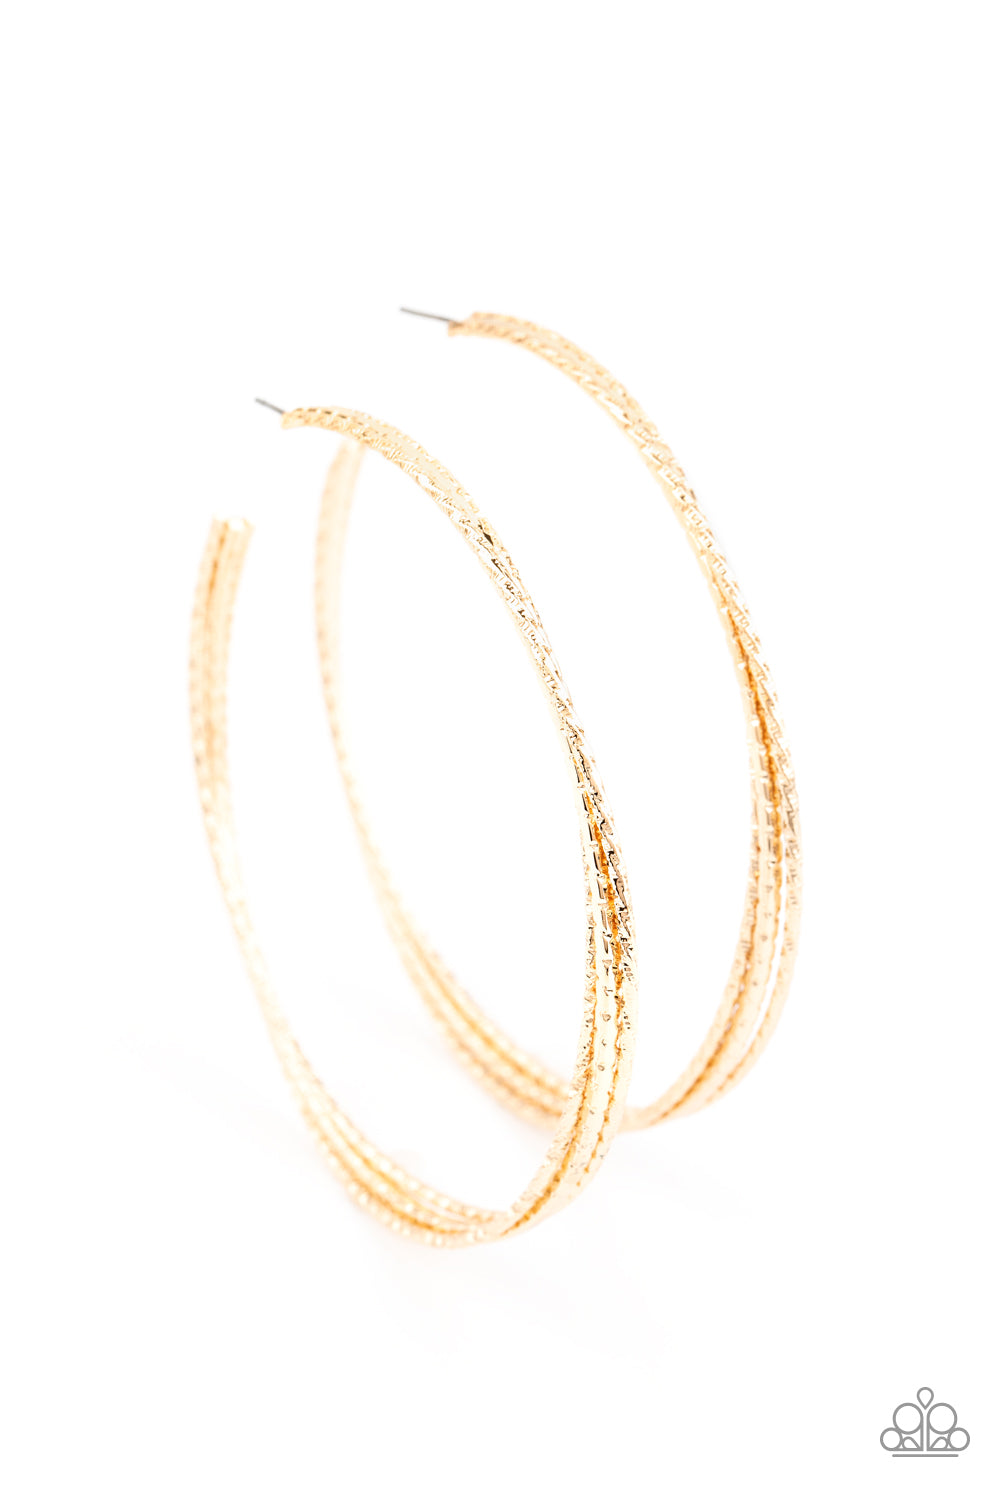 Earrings, Sensitive Skin, Hypoallergenic Jewelry, gold hoops